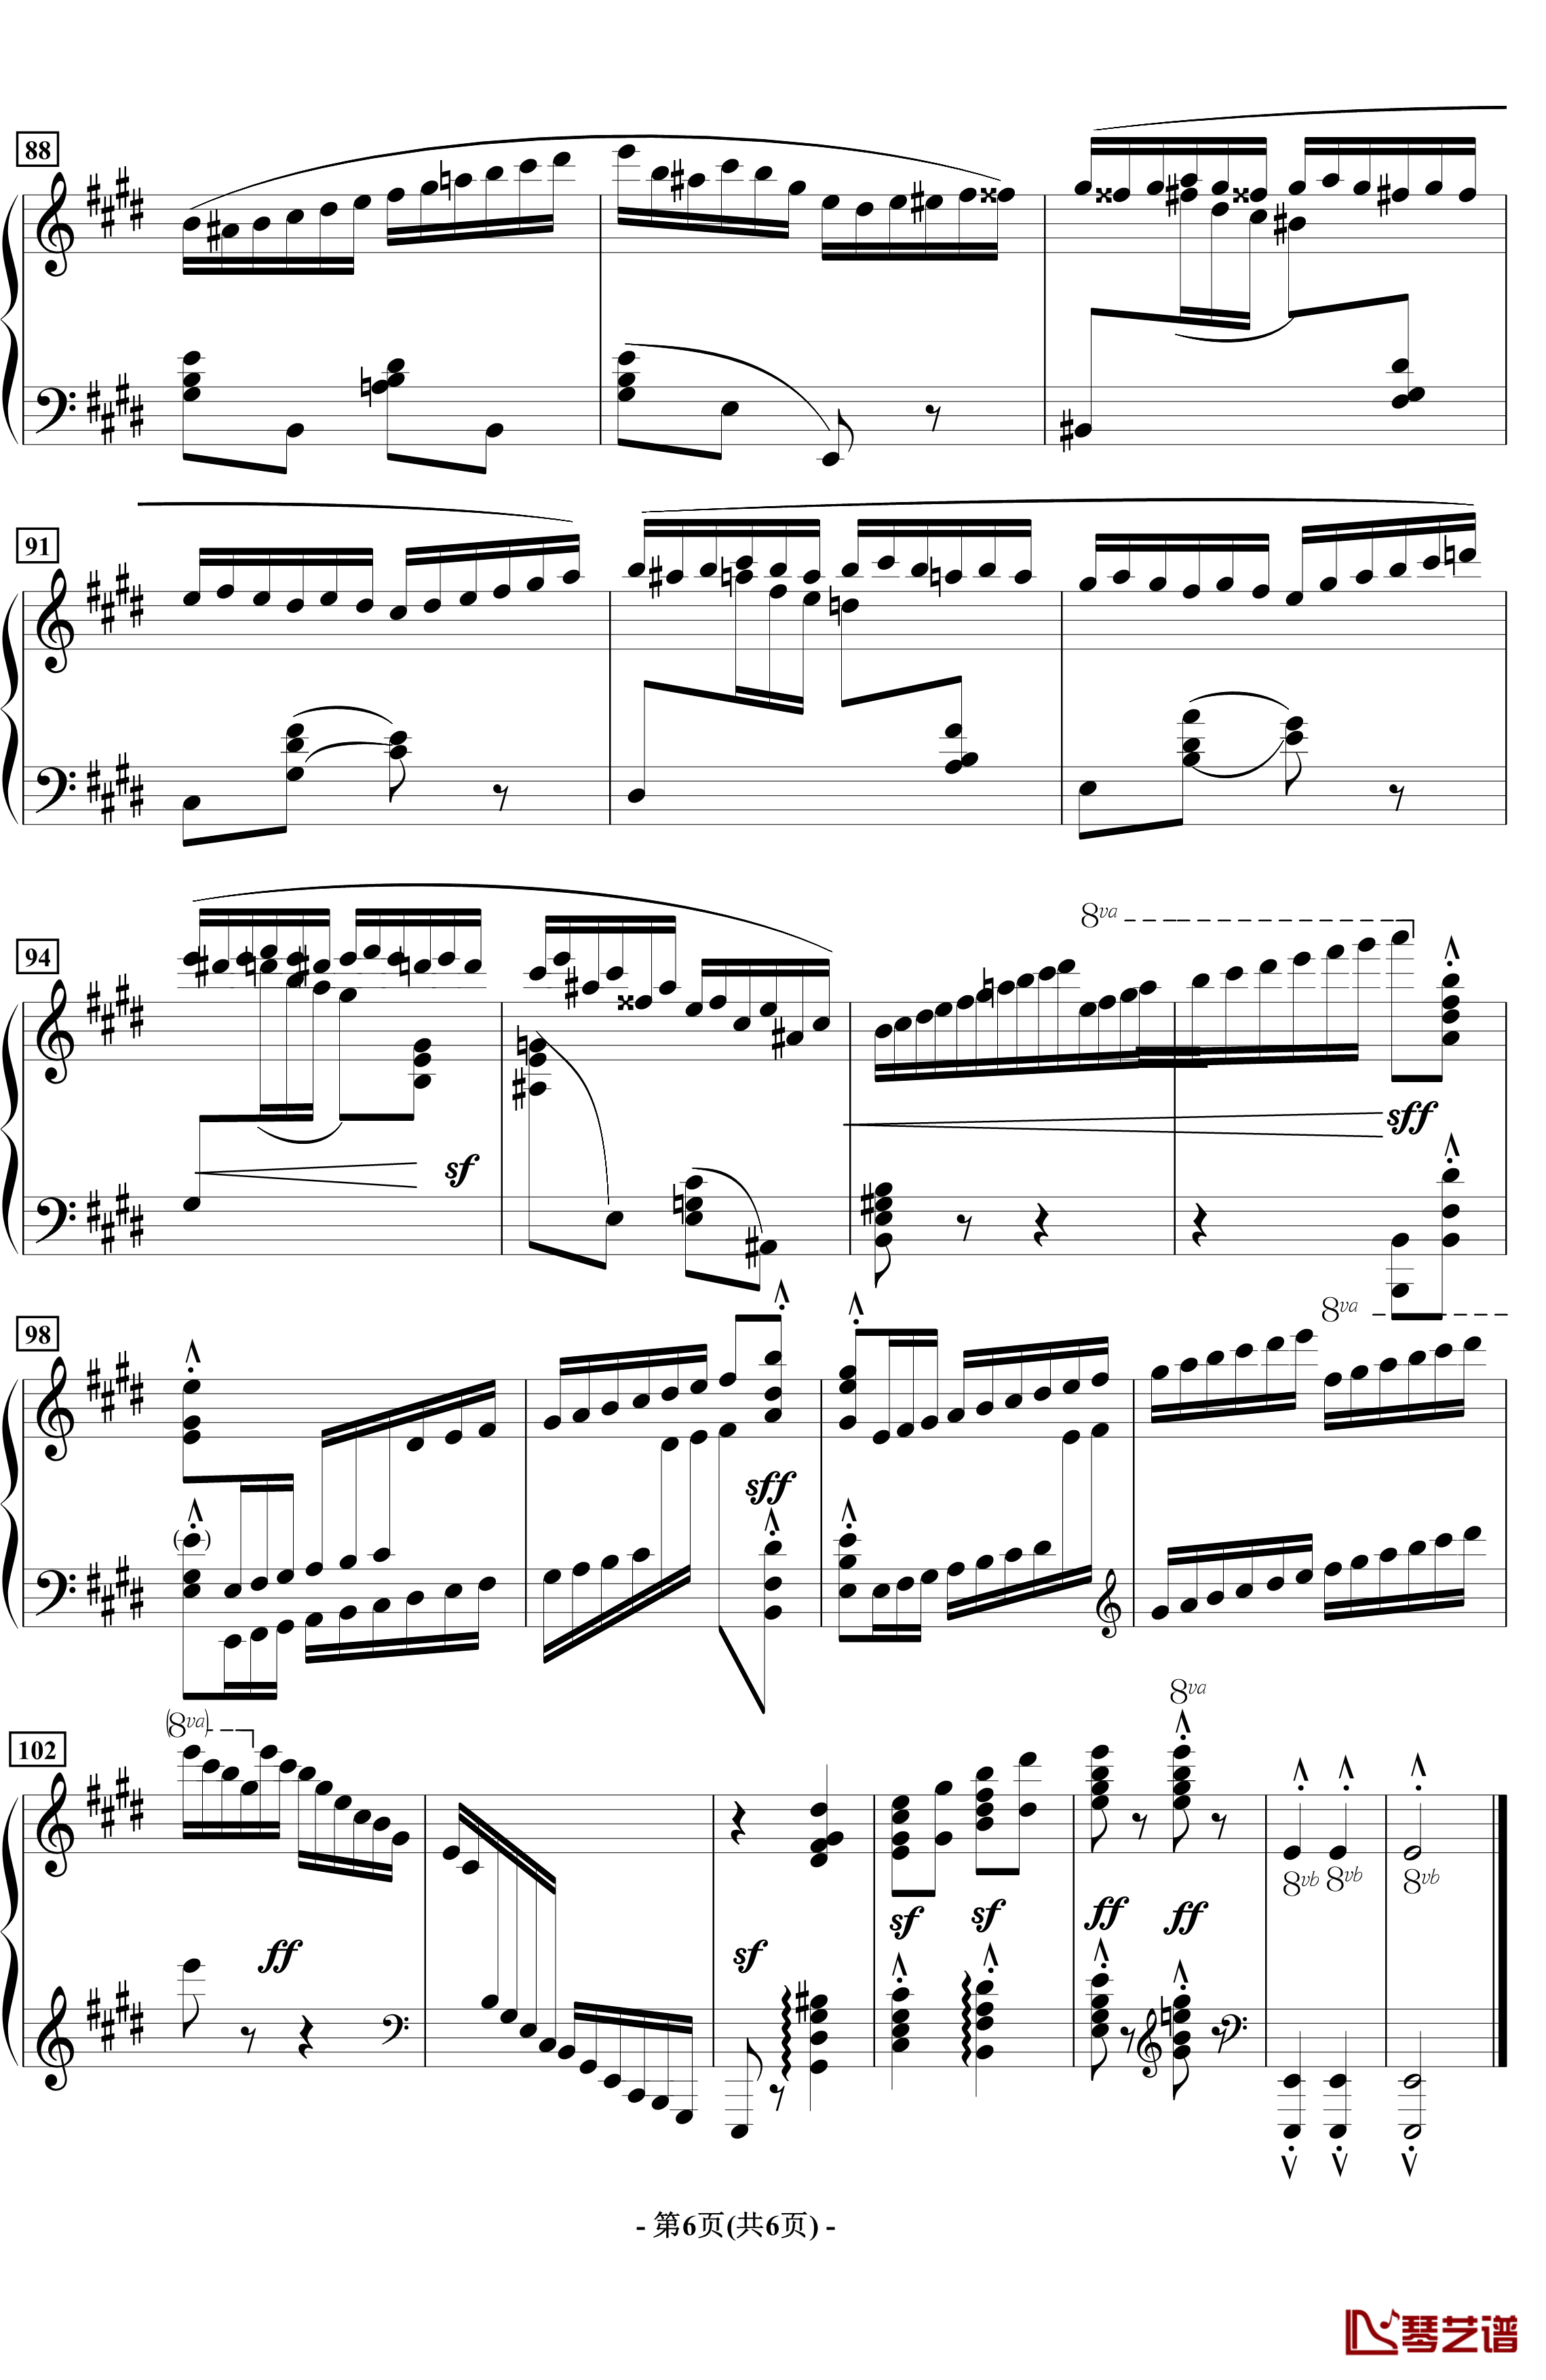 蝴蝶钢琴谱-音乐会练习曲-拉瓦列6